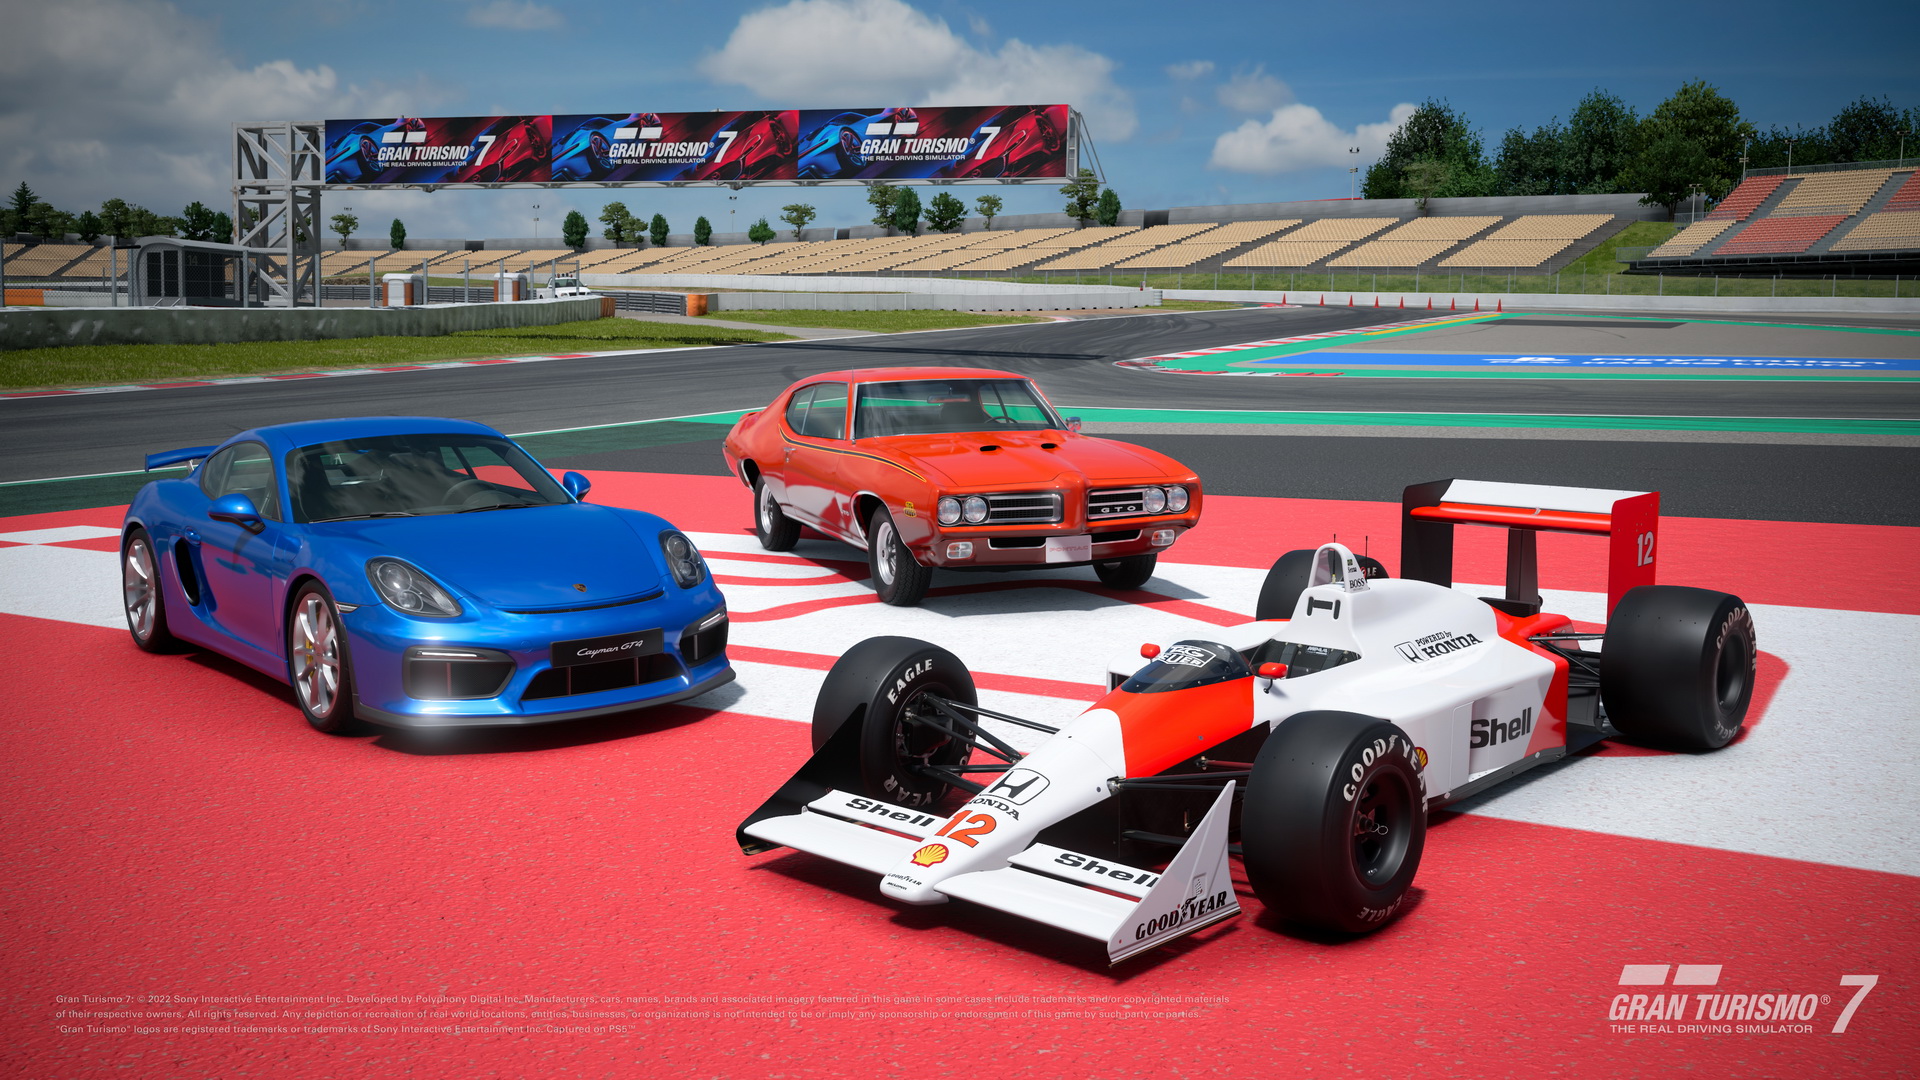 Presentamos la actualización de agosto de "Gran Turismo 7" Añadimos un